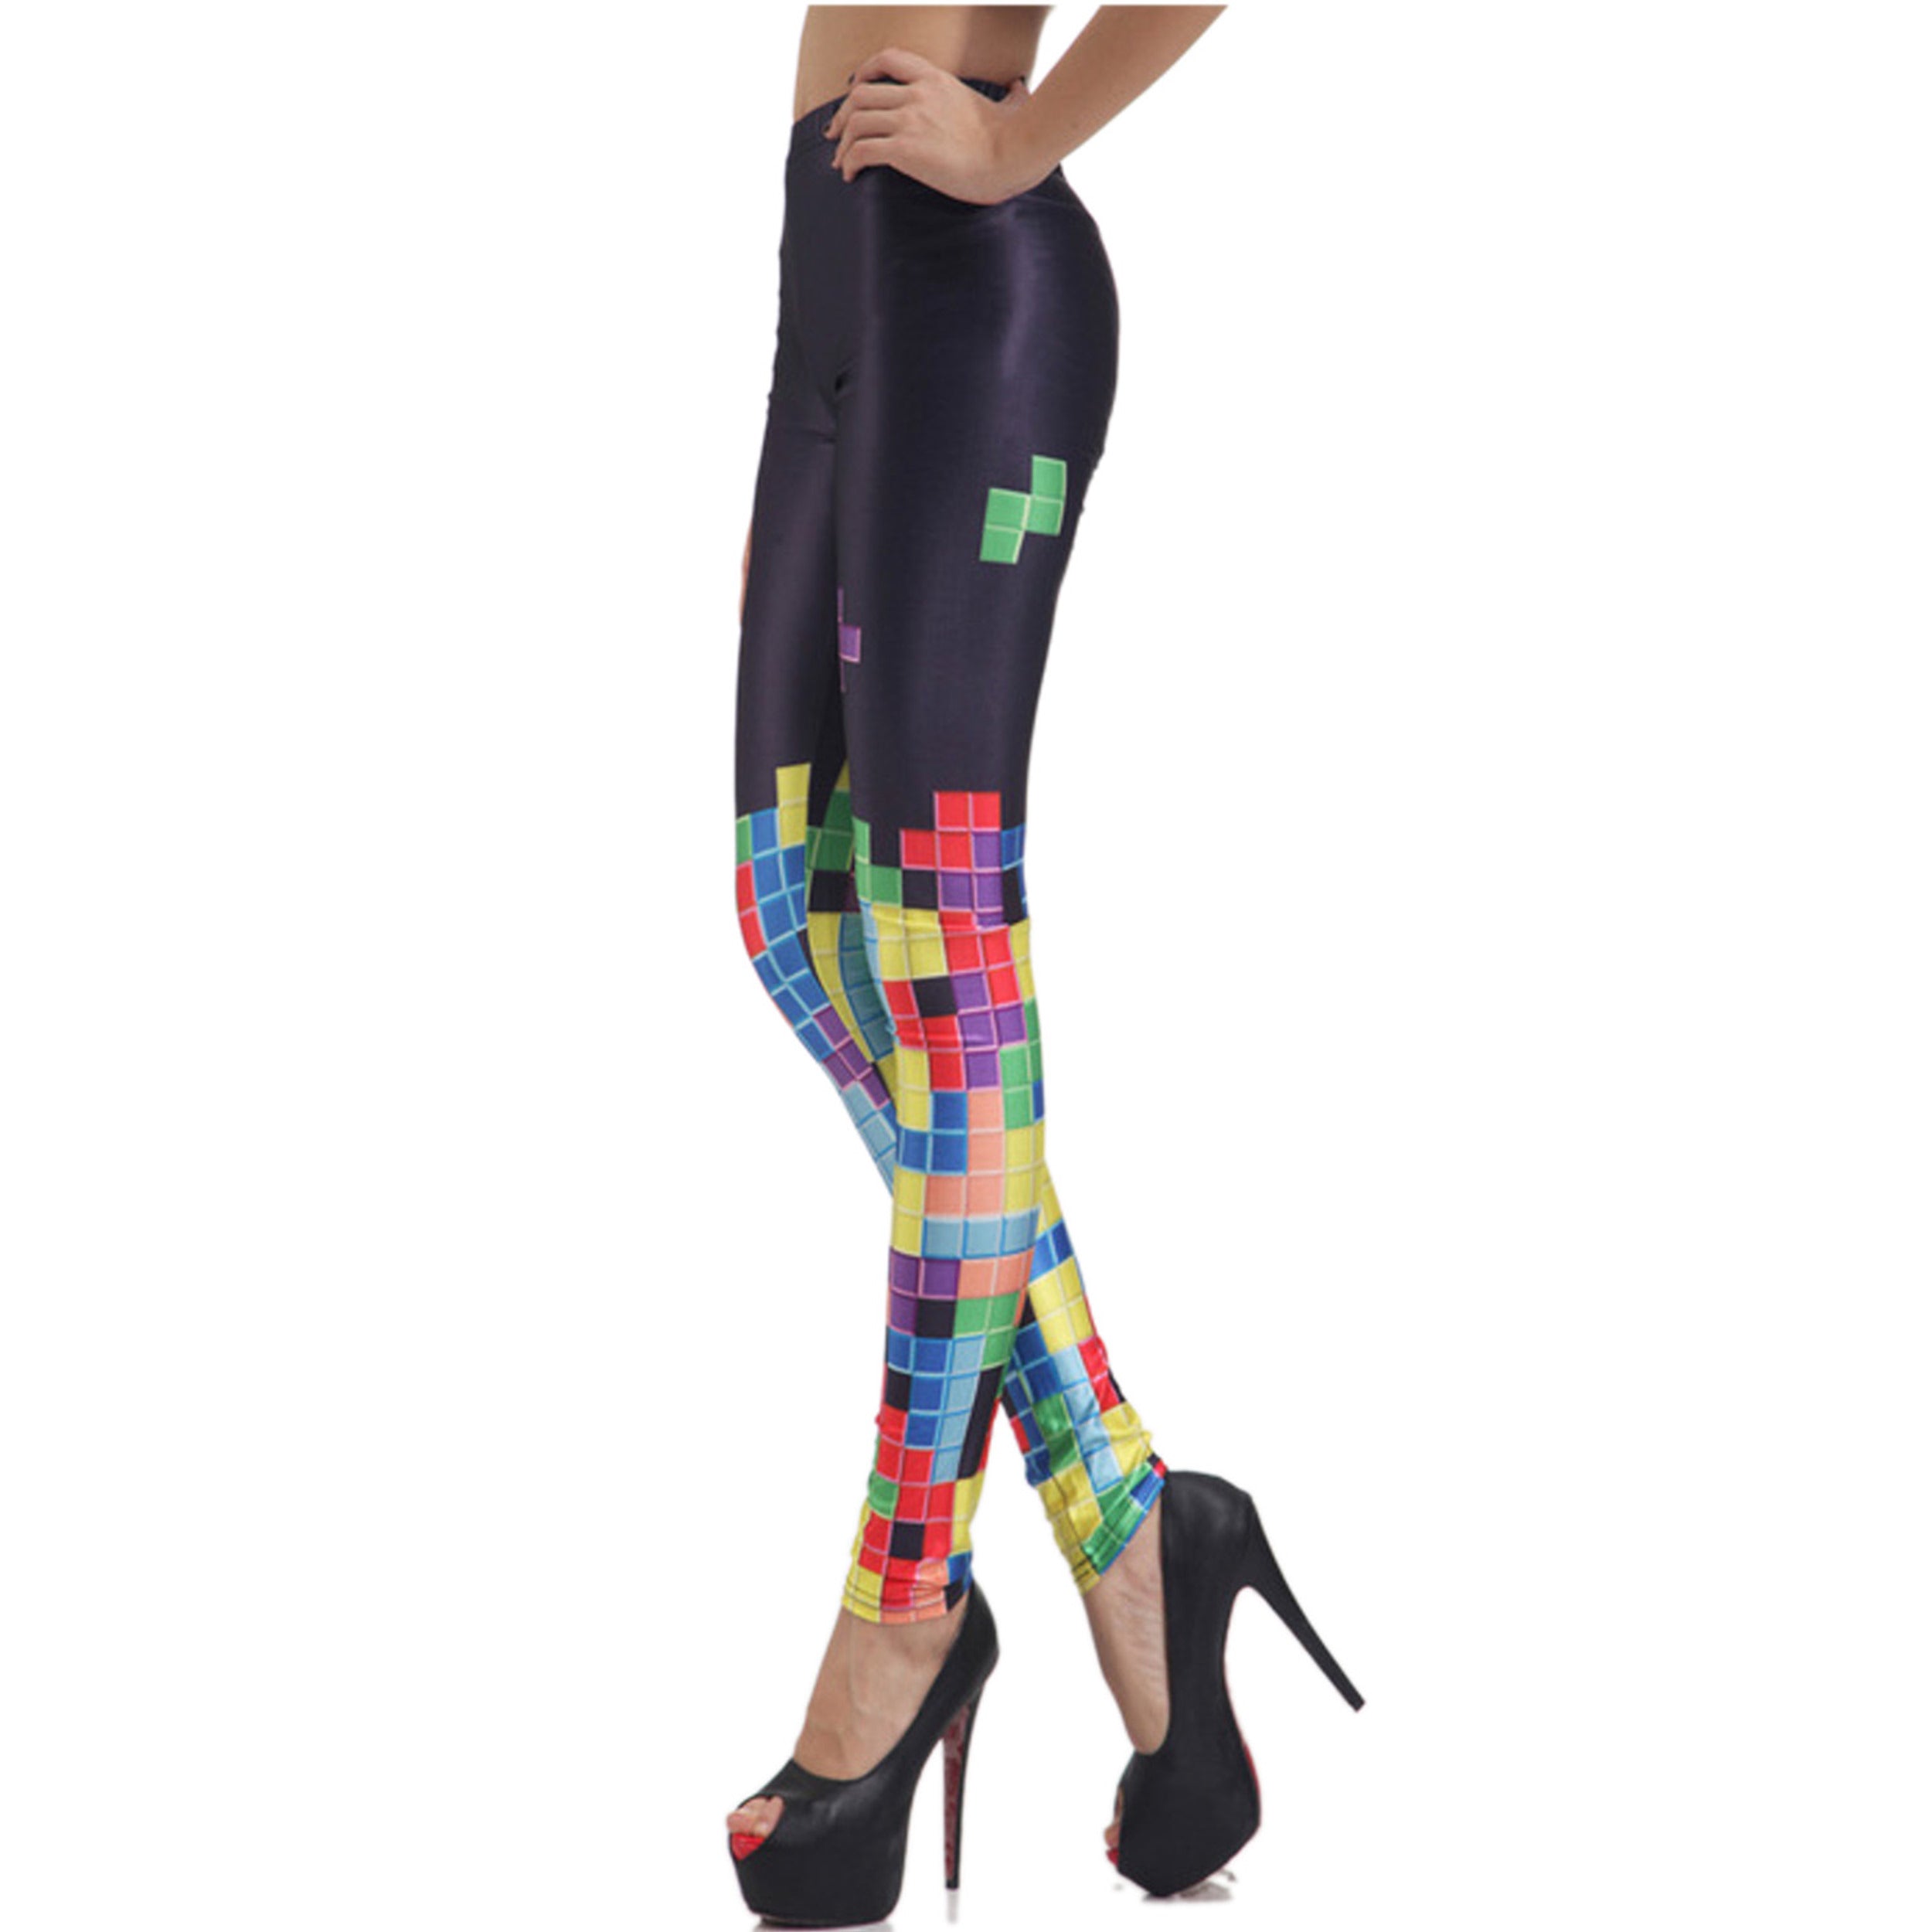 Rubberfashion Leggings Damen Tetris - Sexy Bedruckte Print Leggins Muster Strumpfhose Bunte Glanz Hüft Stretch Hose mit Aufdruck Legging für Frauen